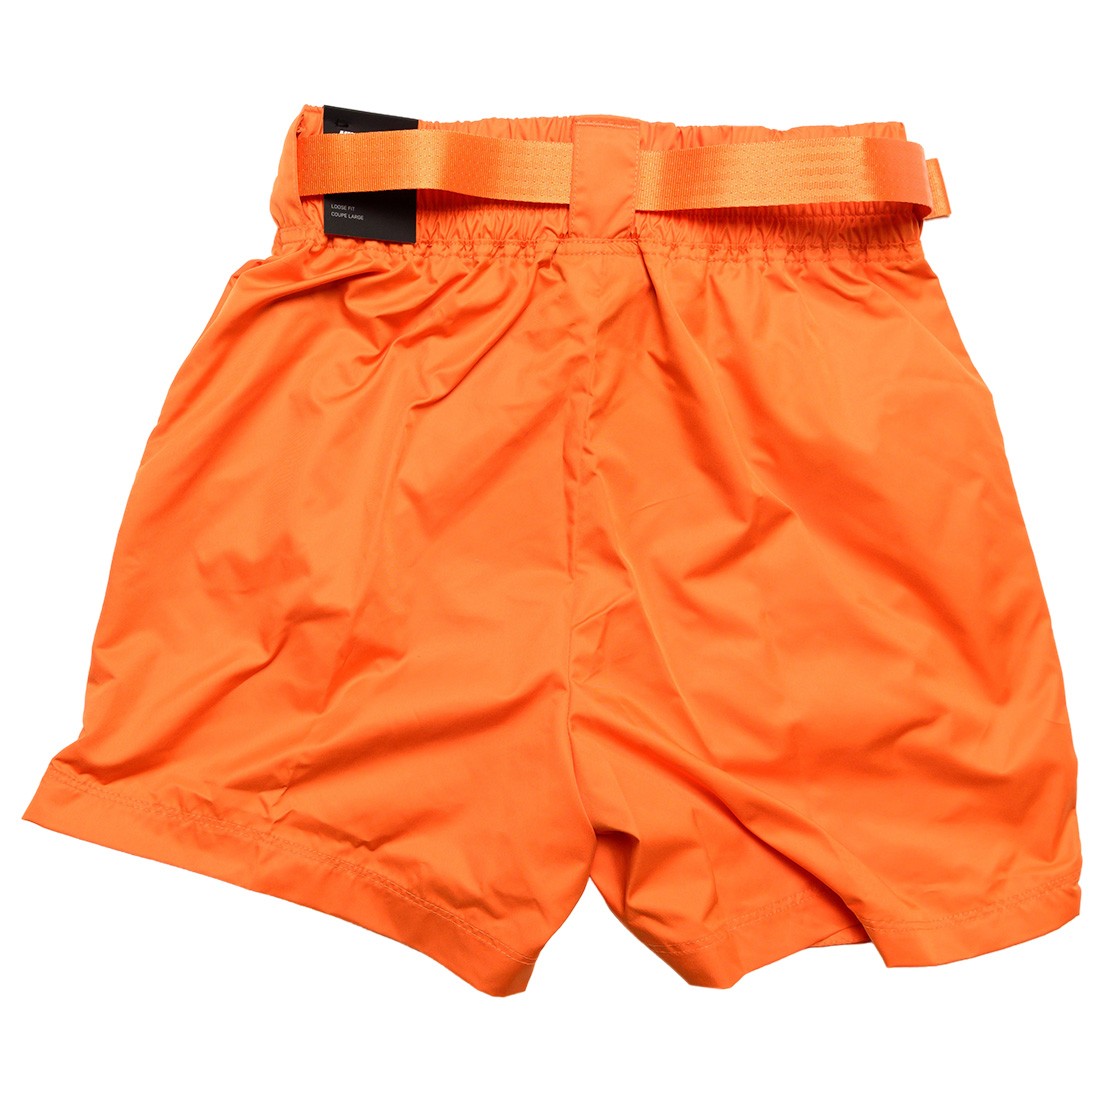 nike sportswear swoosh orange